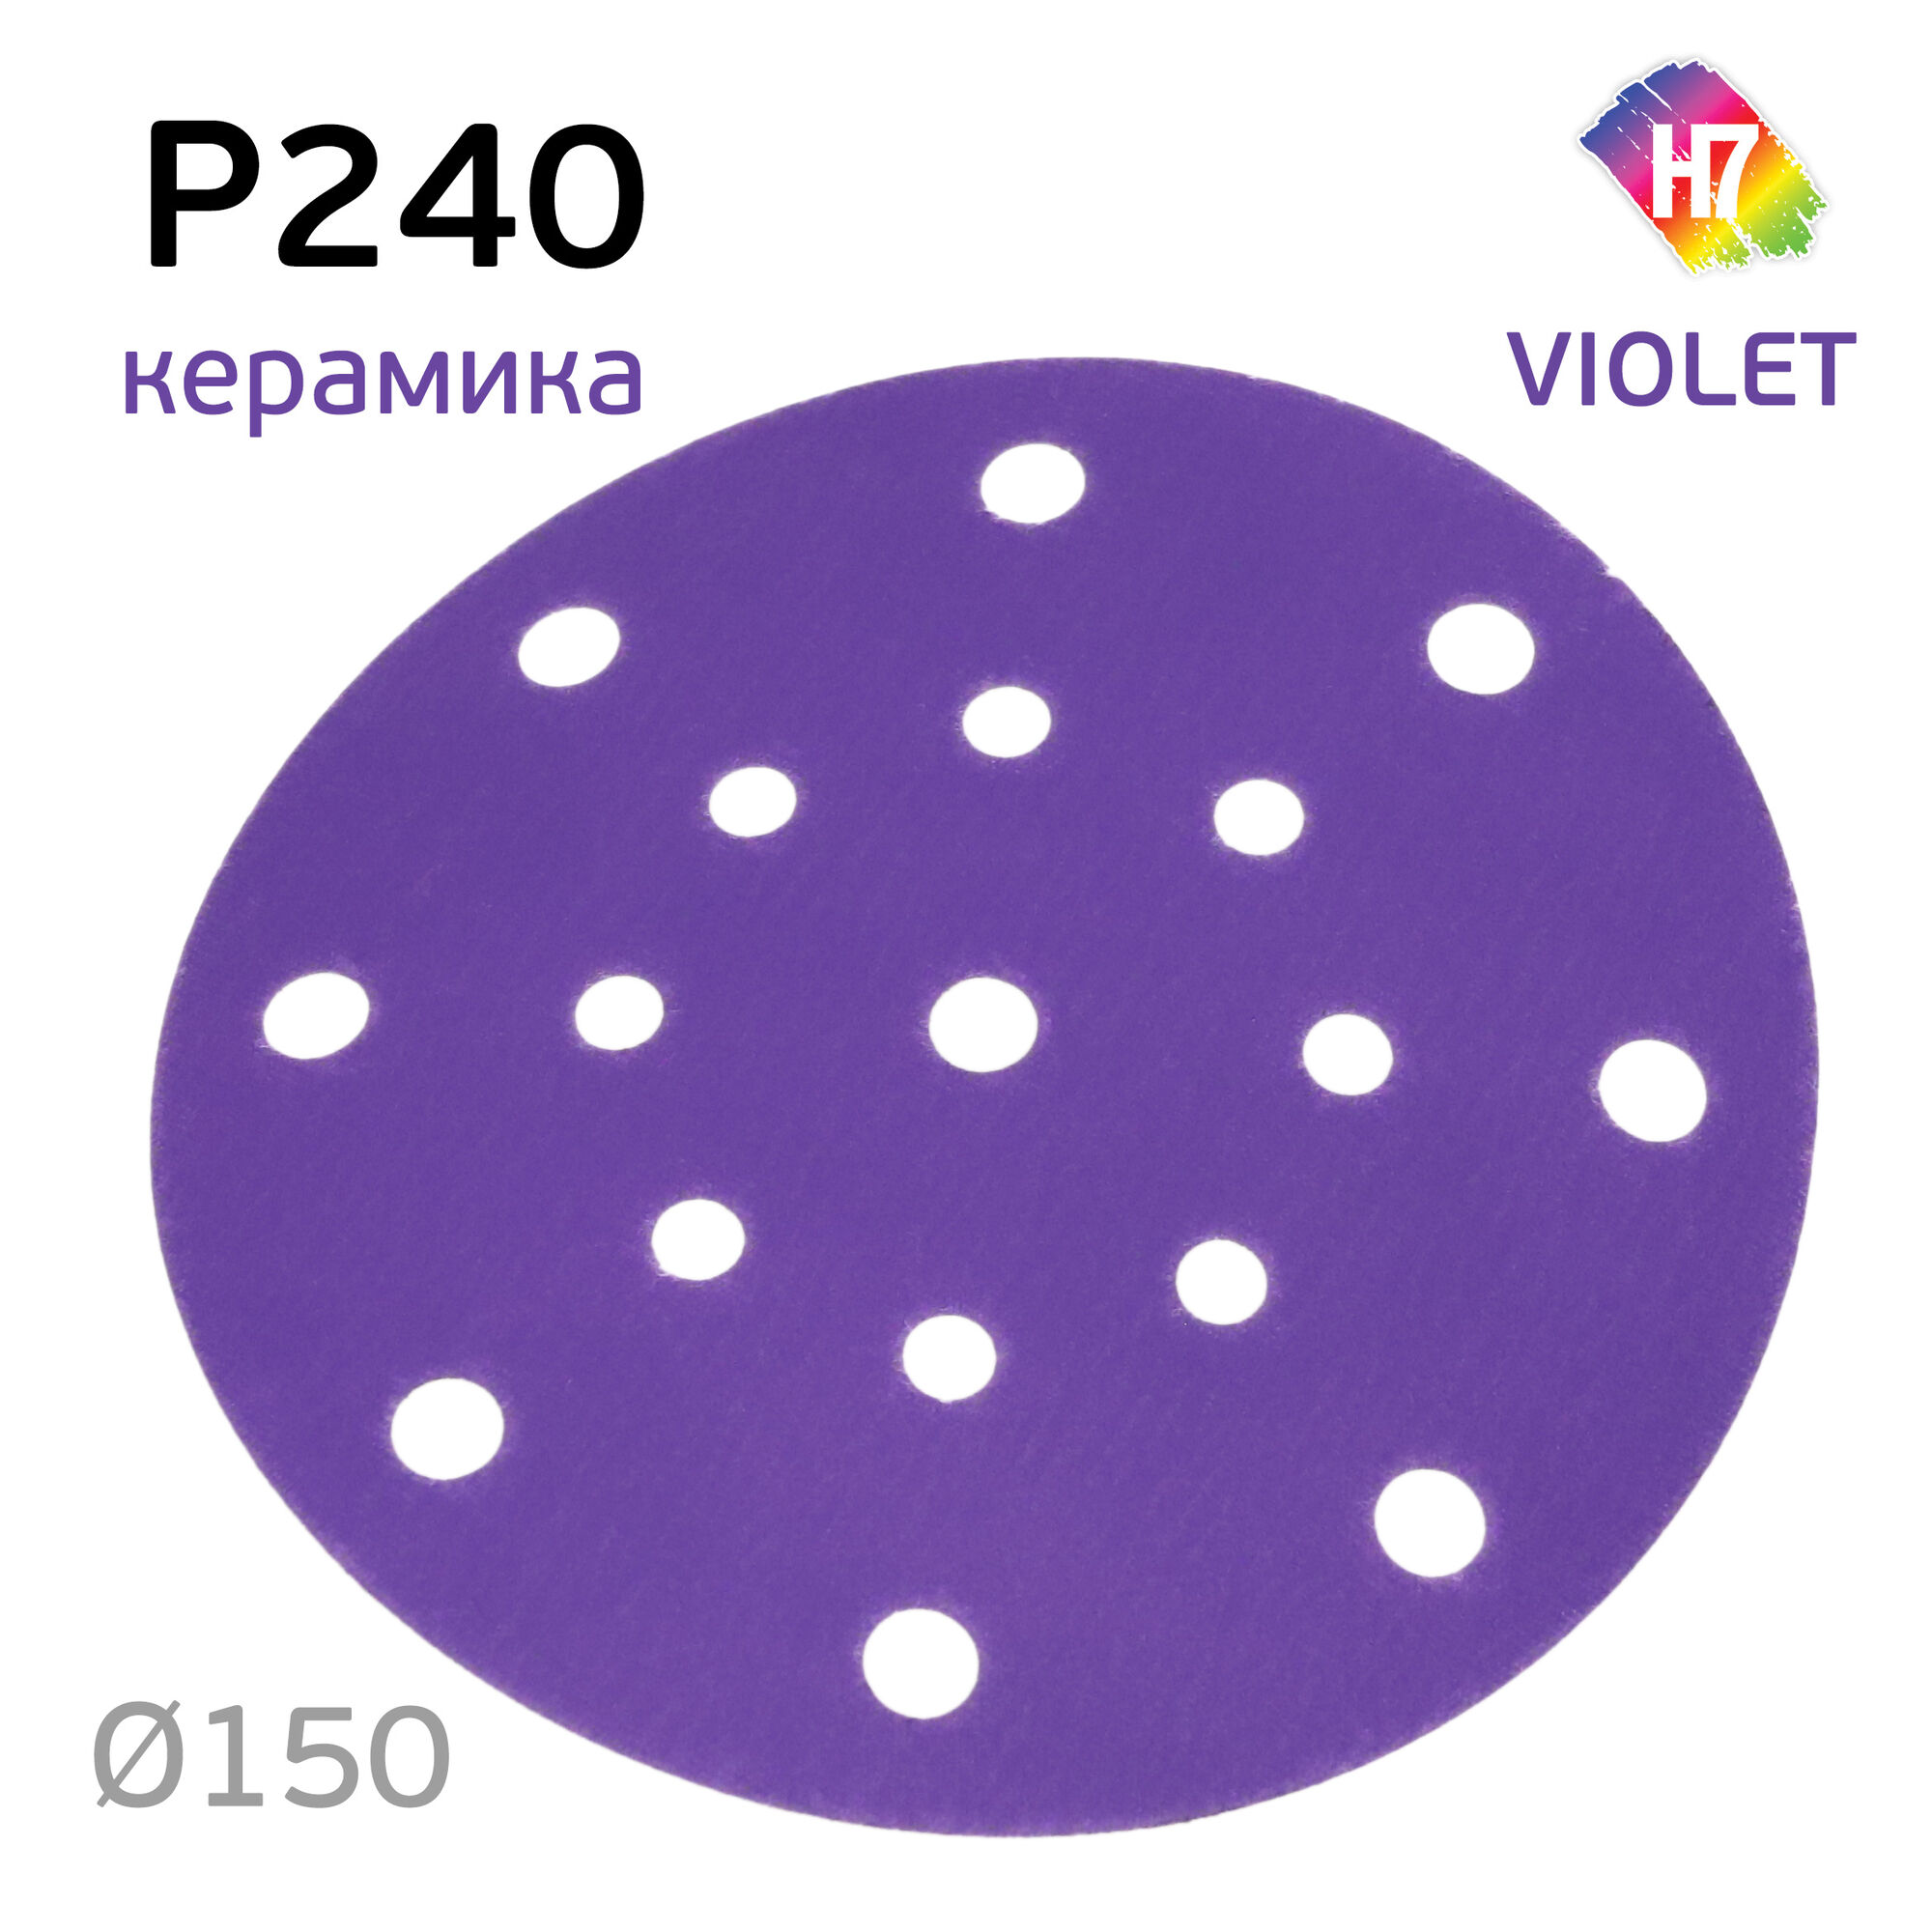 Круг абразивный H7 Violet P240 липучка (17отв.) керамическое зерно